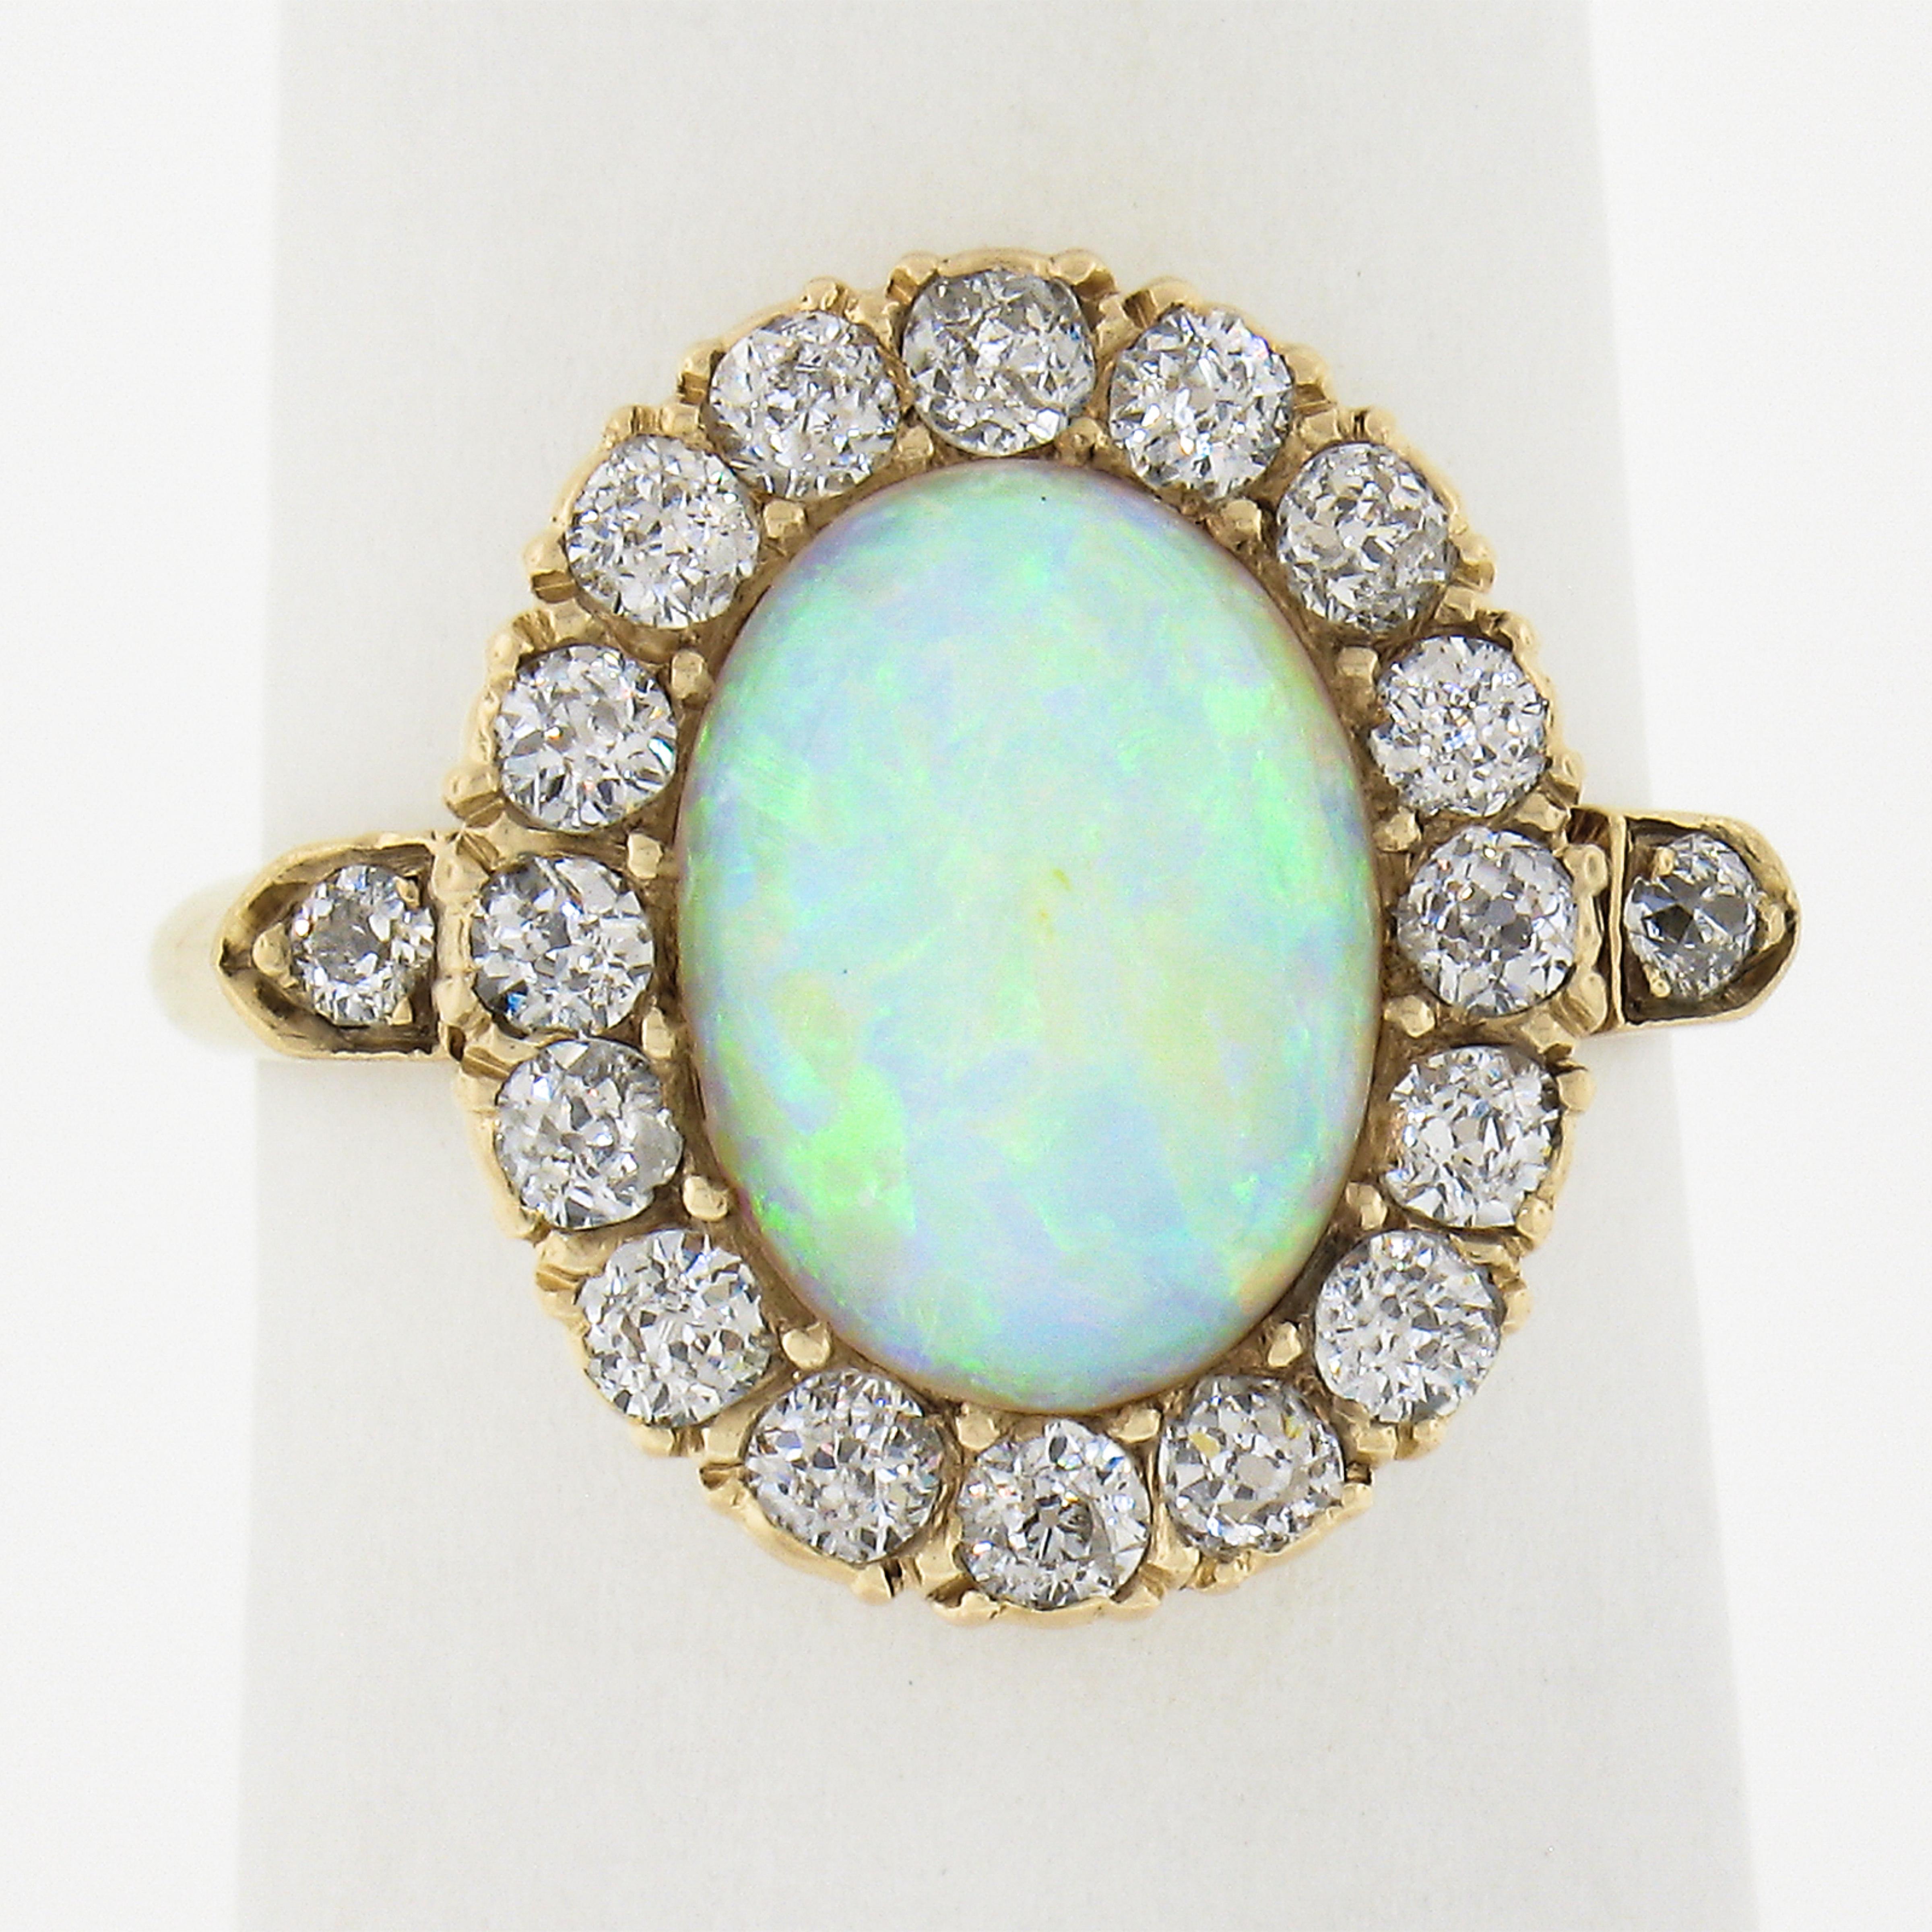 Dieser niedliche Ring aus der viktorianischen Ära ist aus massivem 14-karätigem Gold gefertigt und mit einem ovalen Opal-Cabochon versehen, der ein lebhaftes Spiel aus Blau, Grün und Orange zeigt. Der Opal-Solitär ist umgeben von einem feurigen Halo